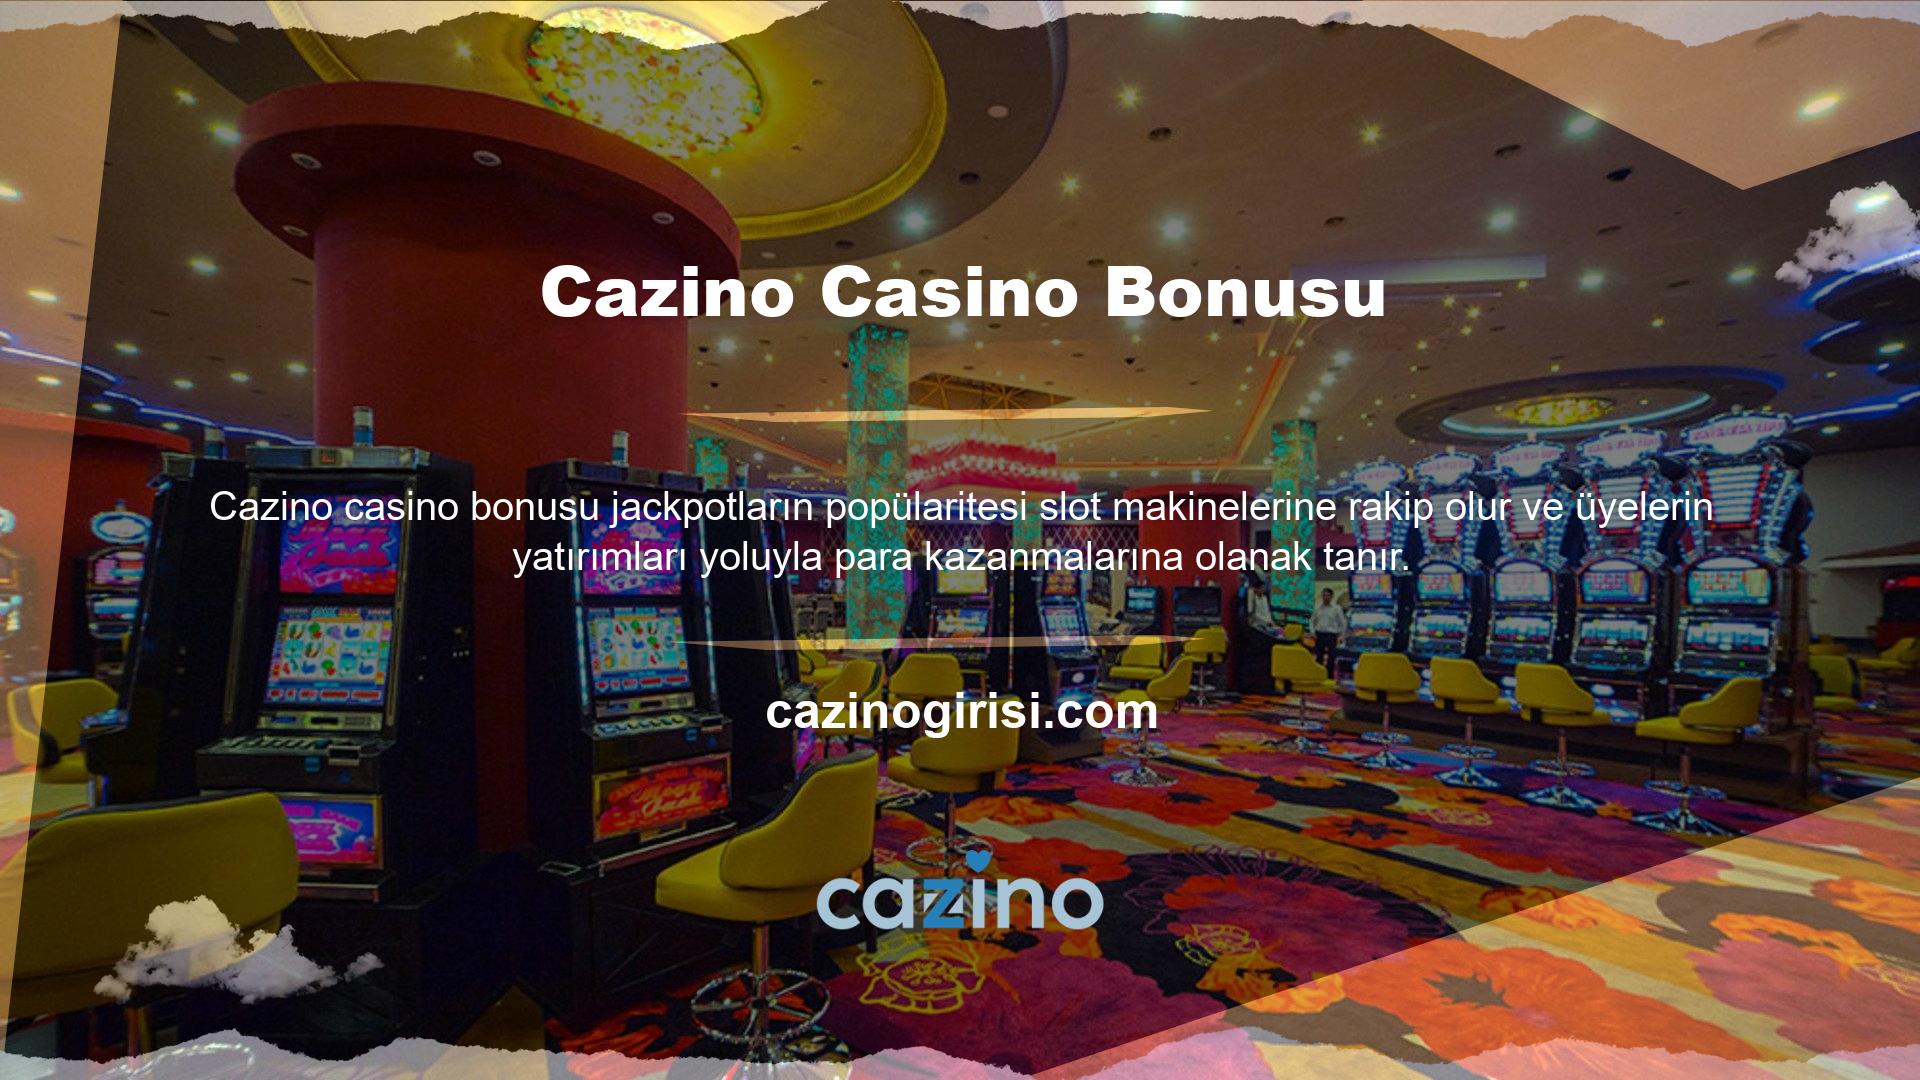 Cazino casino oyunlarında yüzlerce jackpot sembolü mevcuttur ve bunların seçimi sürekli değişmektedir